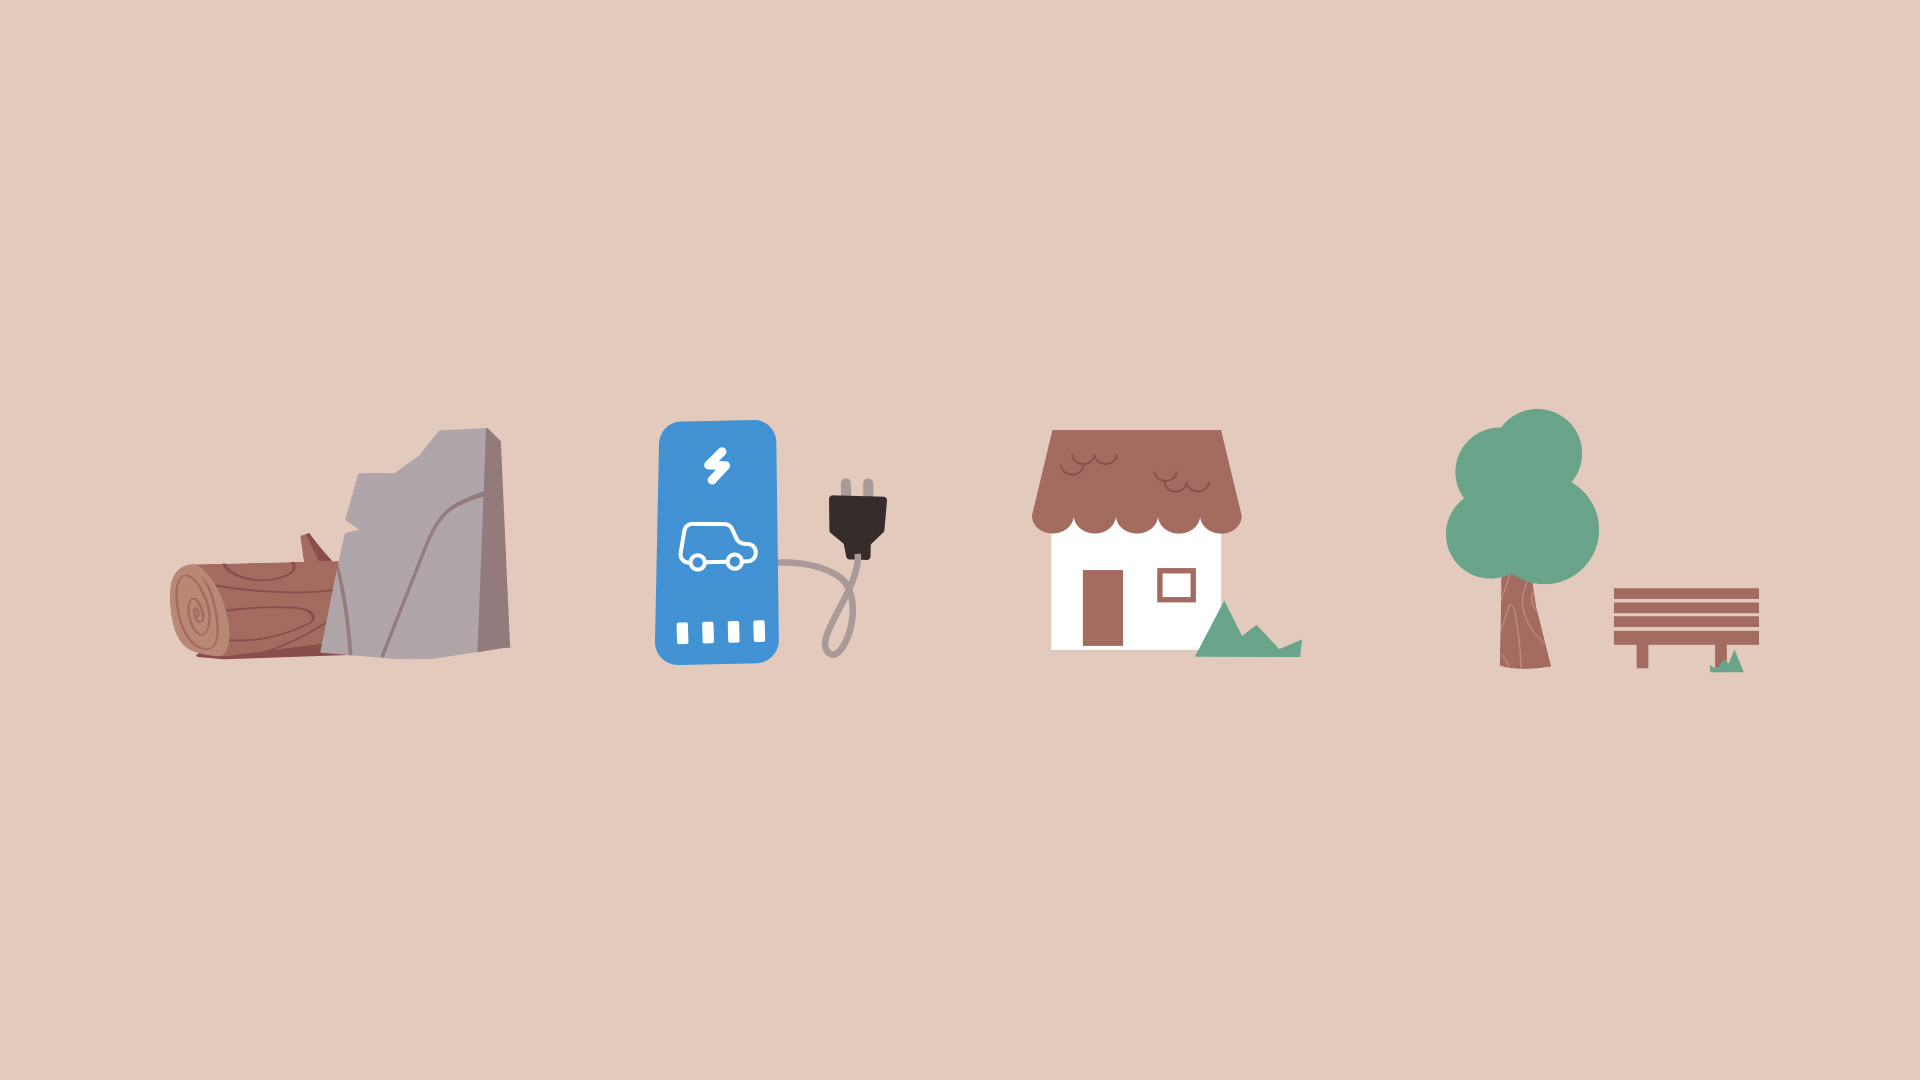 4 icônes représentant du bois et de la pierre, un chargeur de voiture électrique, un commerce et des espaces verts